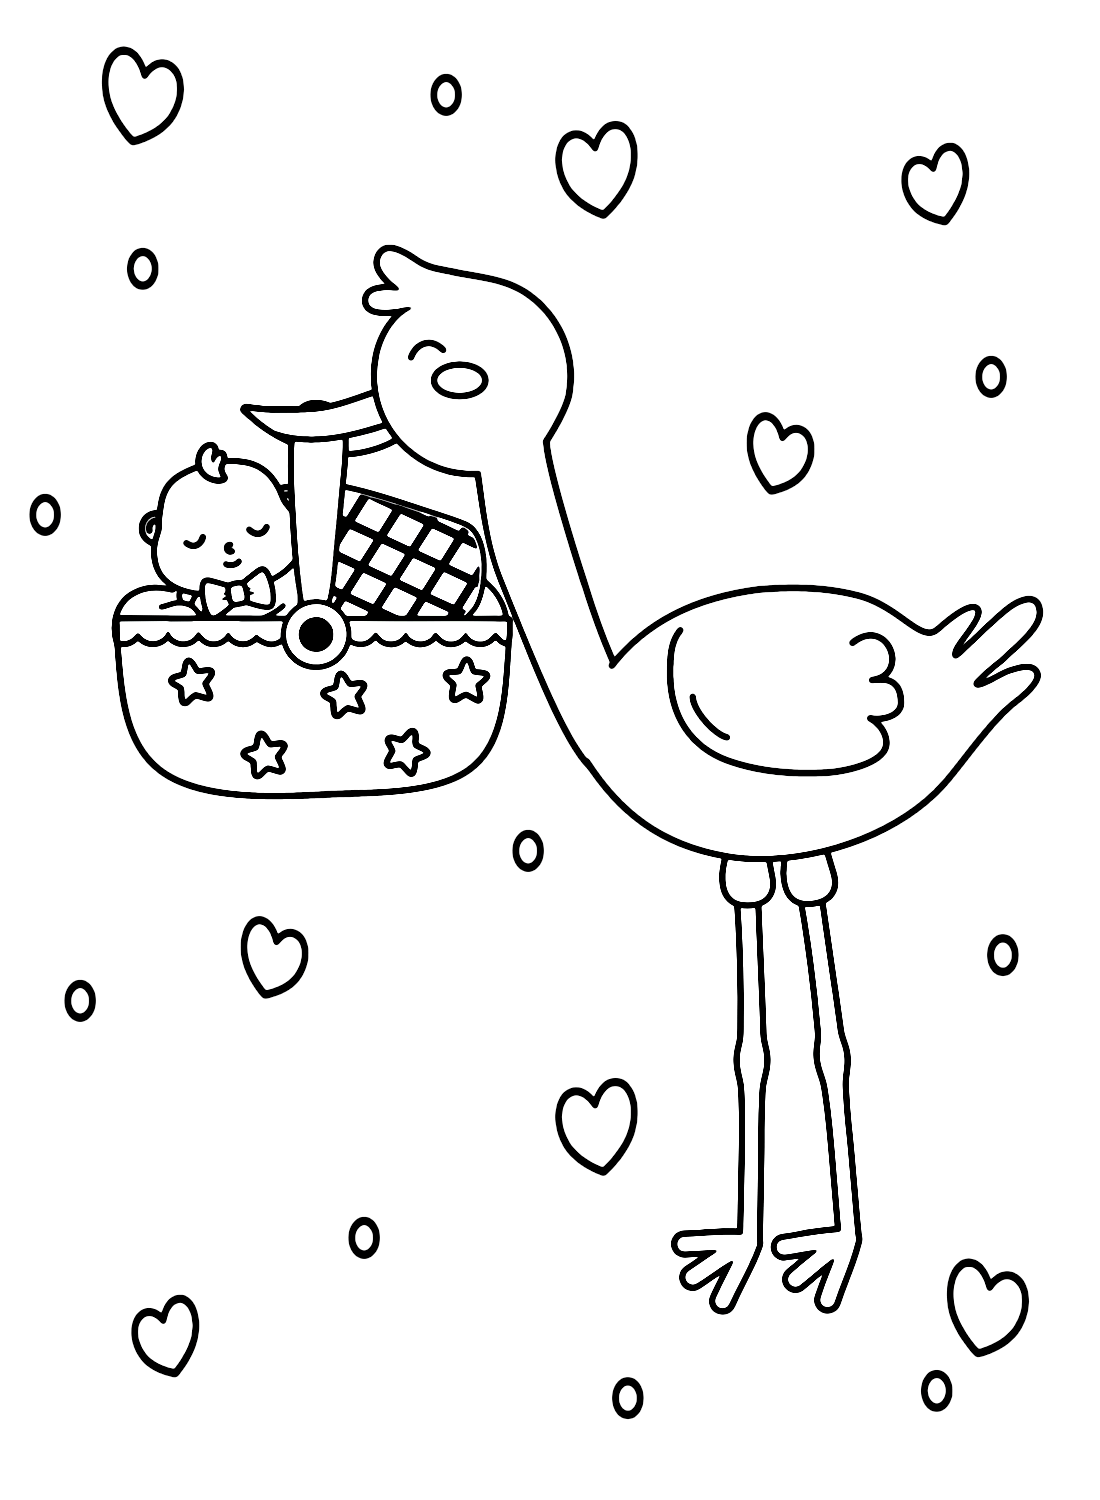 Аист с младенцем в корзине от Stork